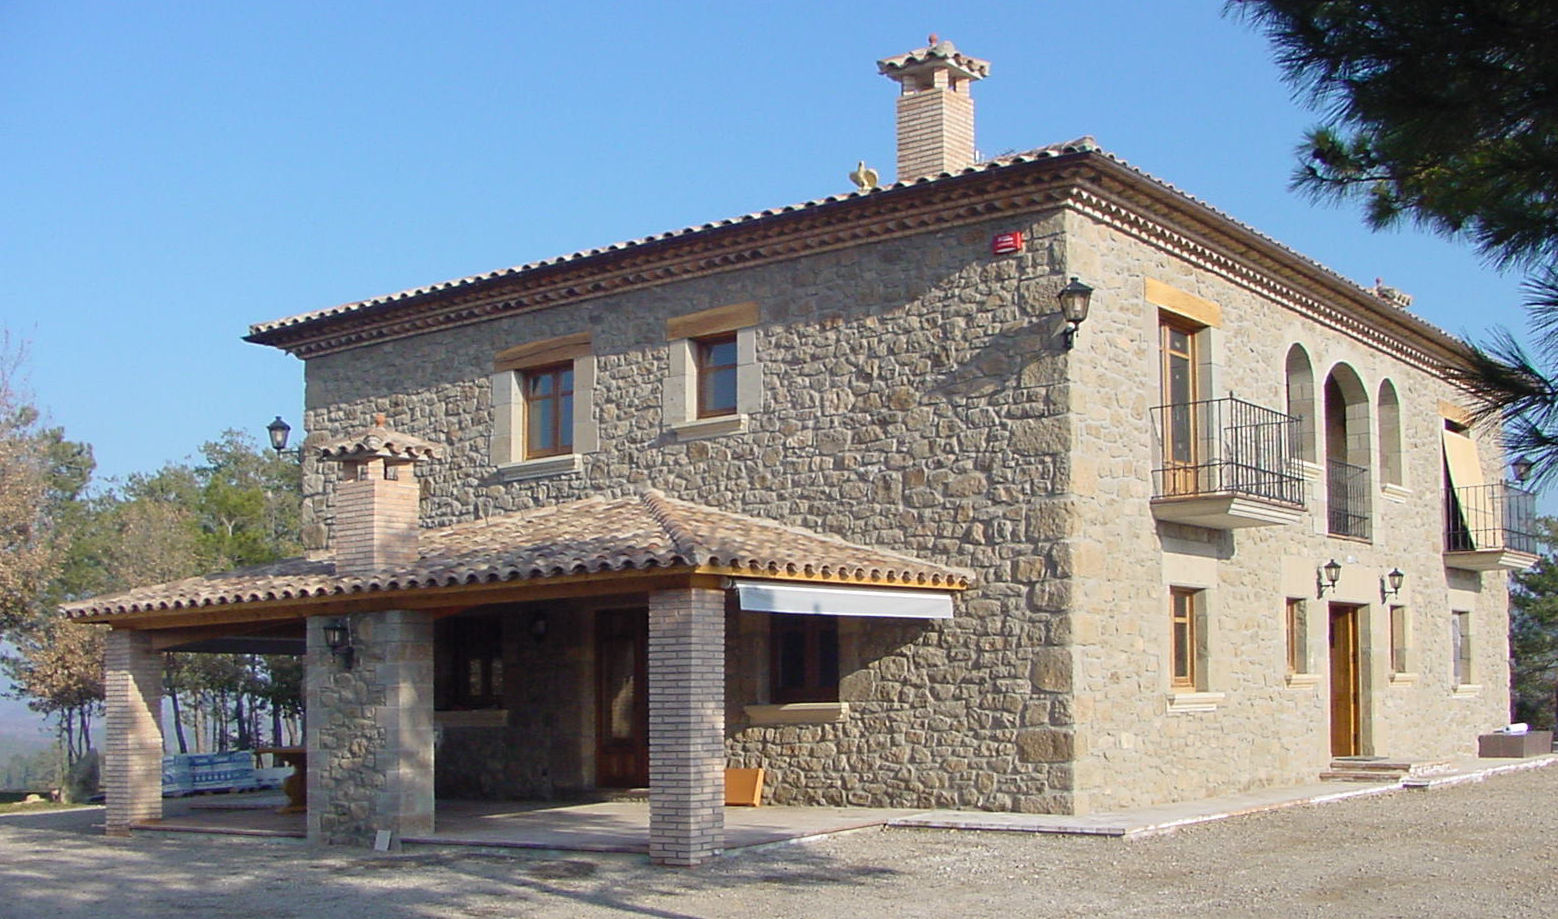 Casa de turismo rural en la Torre d'Oristà (Barcelona), ALENTORN i ALENTORN ARQUITECTES, SLP ALENTORN i ALENTORN ARQUITECTES, SLP Casas de estilo rústico Piedra